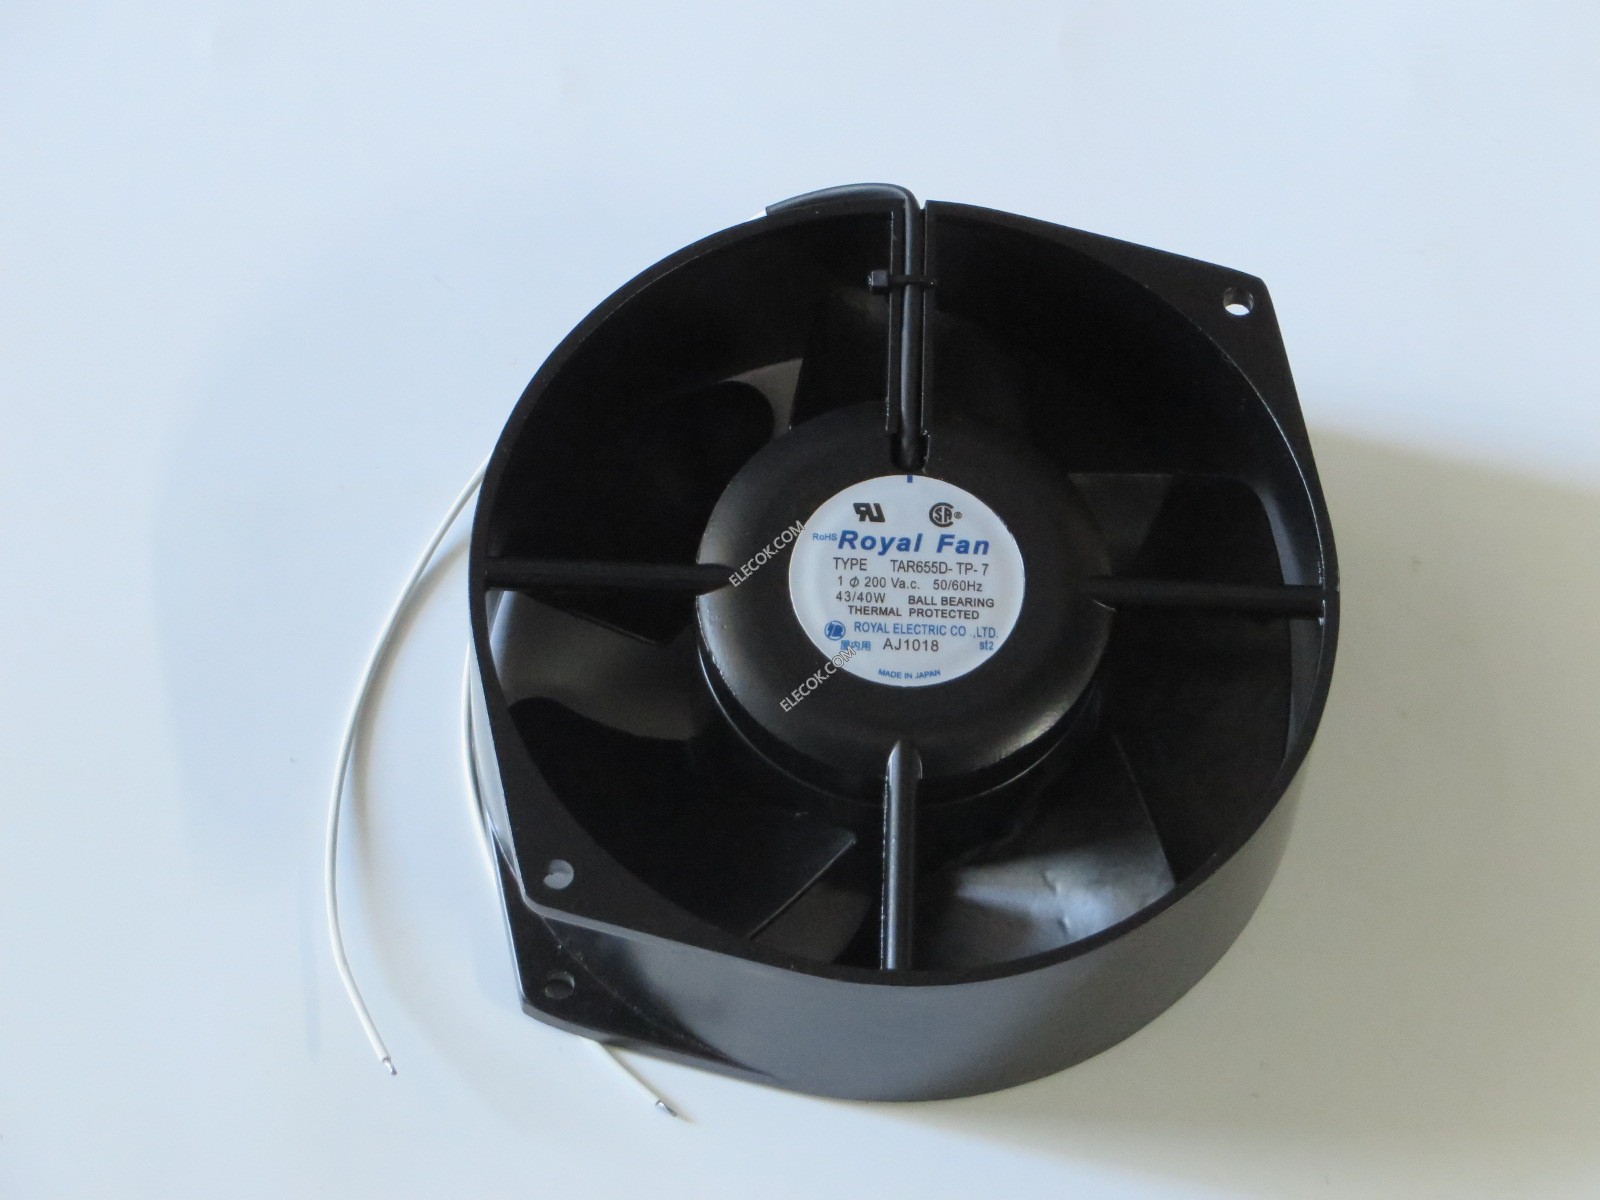 ROYAL FAN TAR655D-TP-7 200V 43/40W wires Cooling Fan refurbished